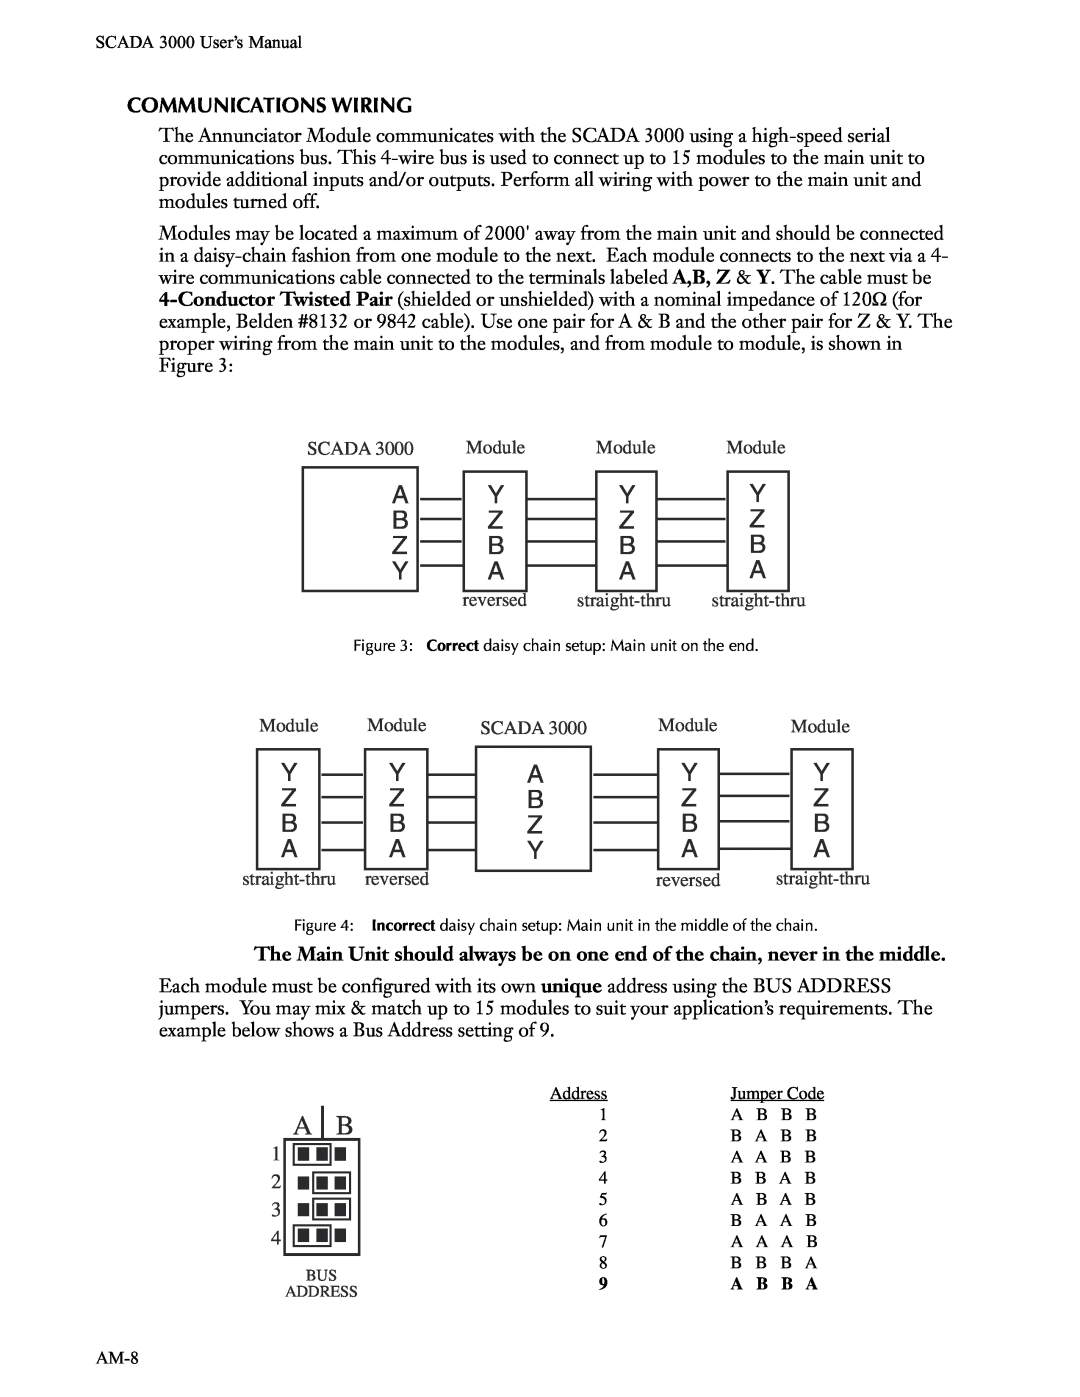 Phonetics SCADA 3000 manual A B Z Y, Y Z B A 